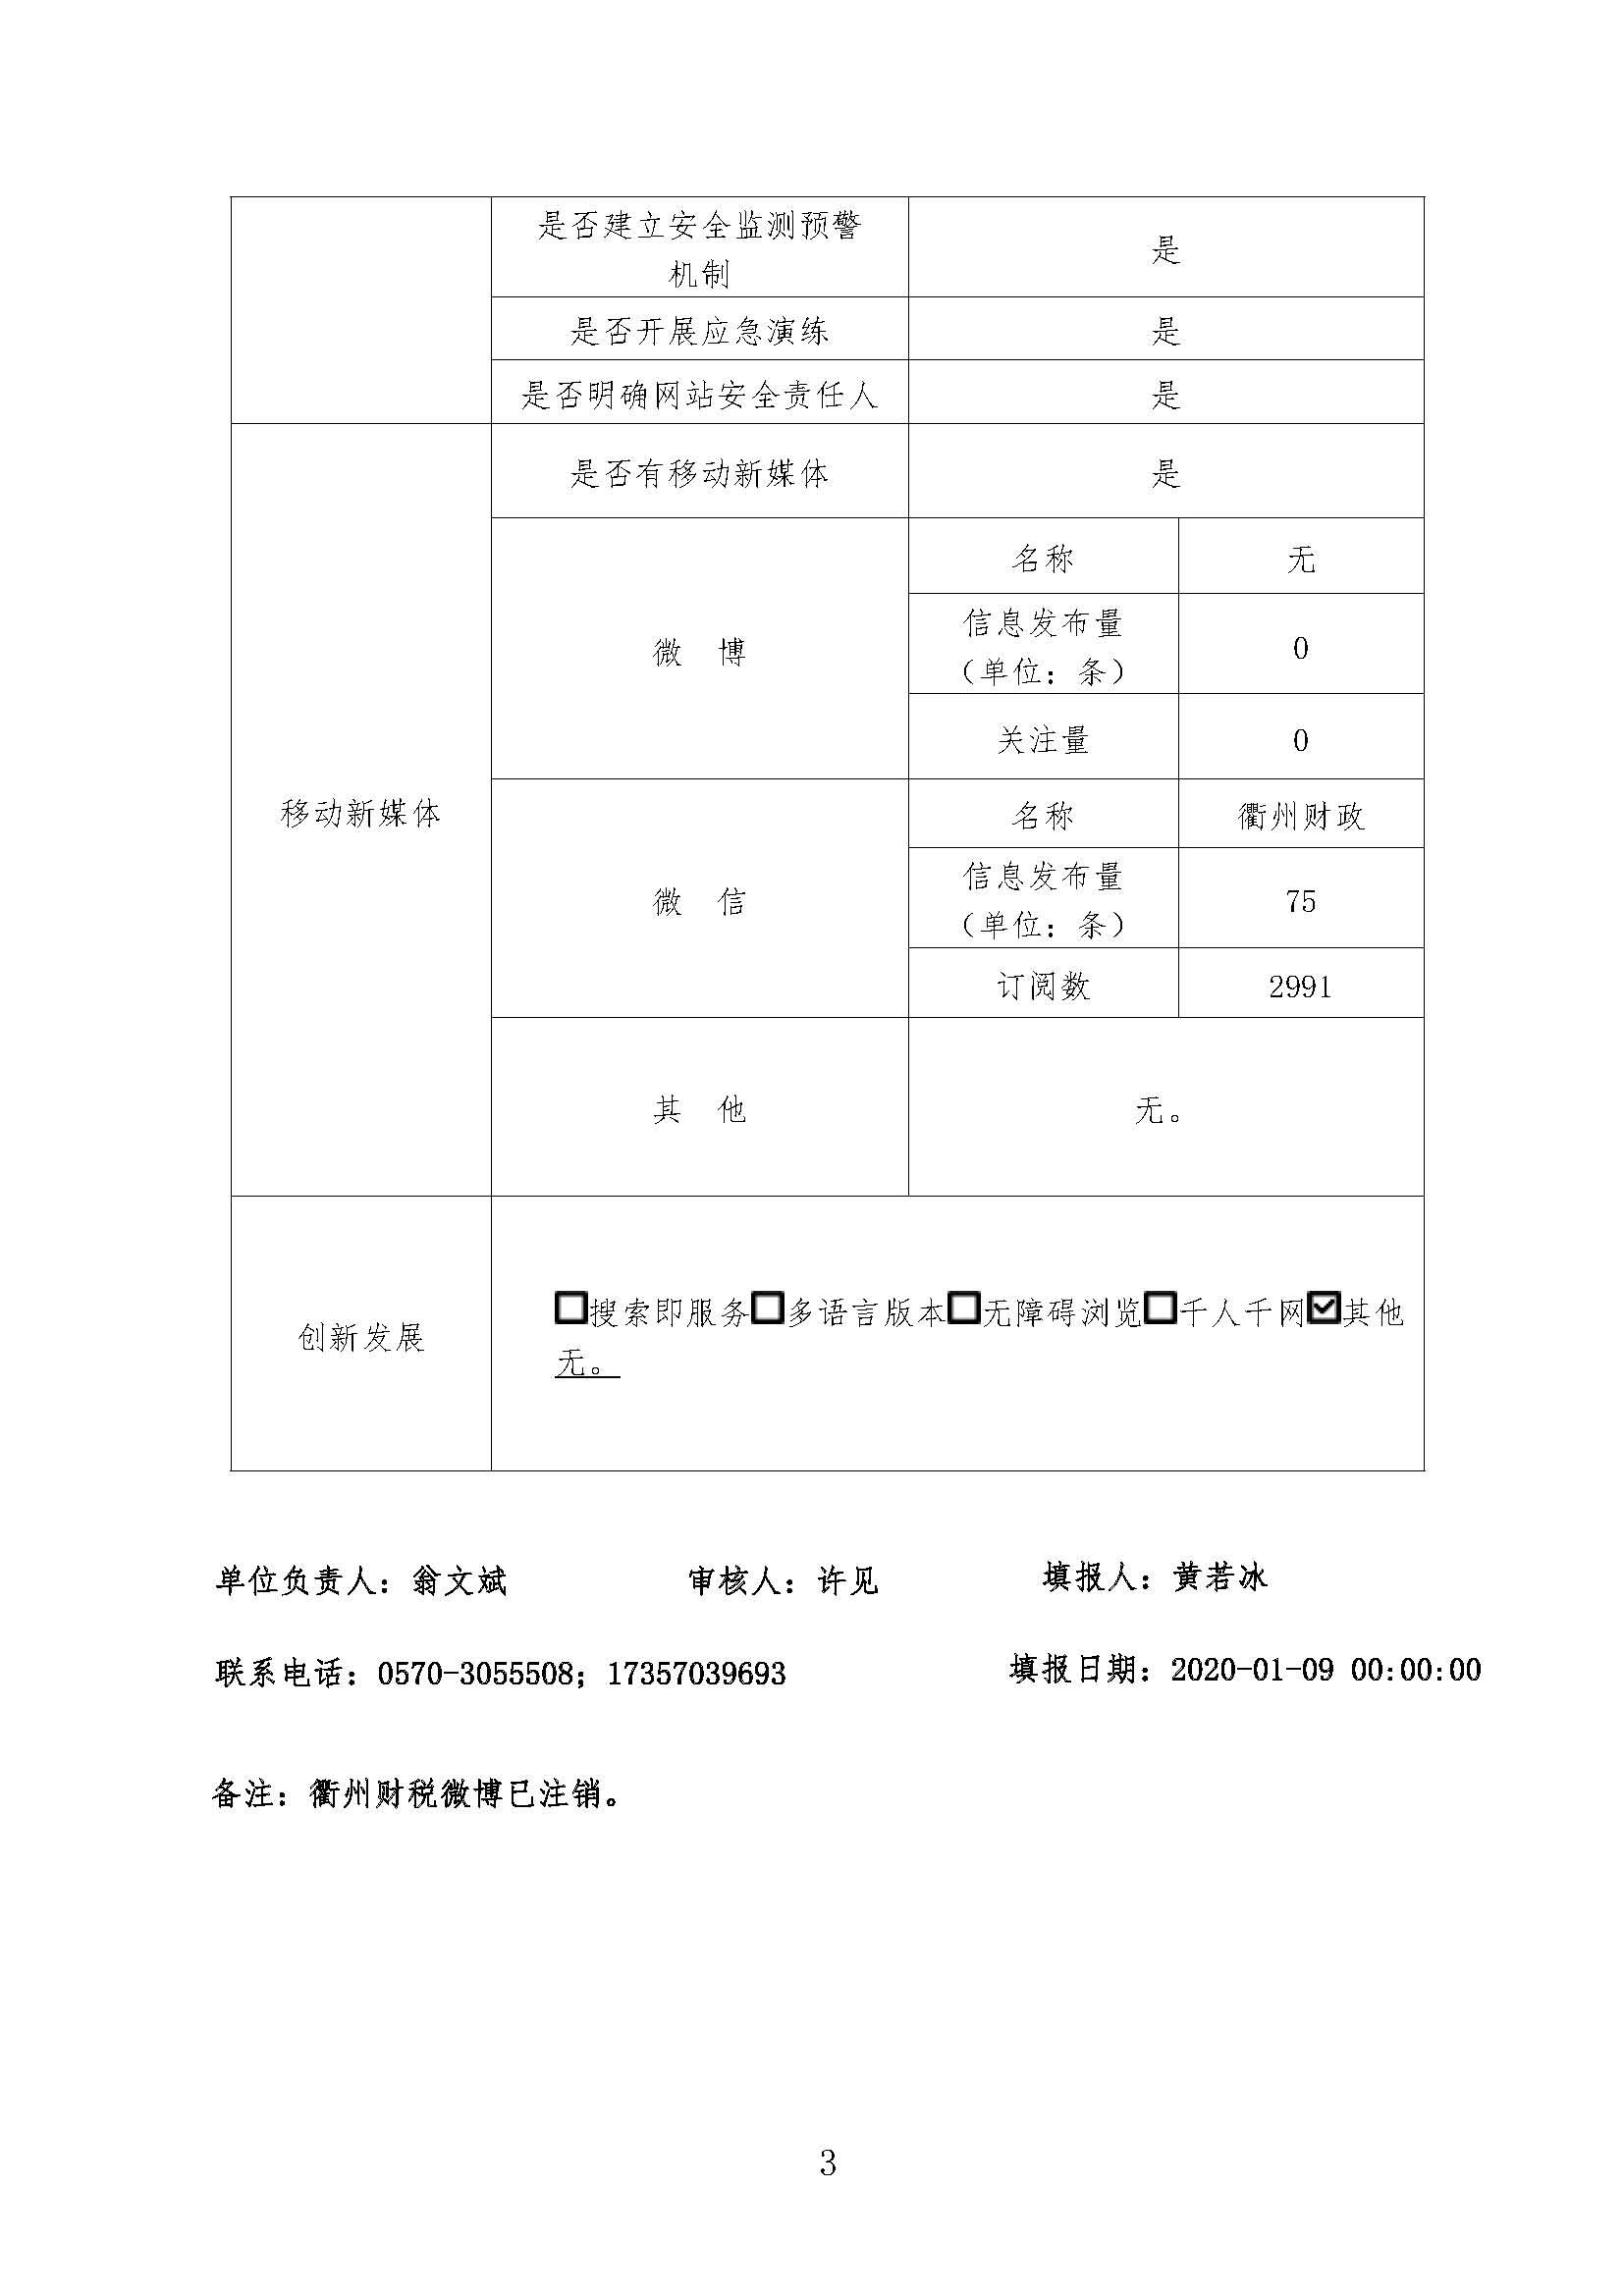 2019年政府网站工作年报_页面_3.jpg